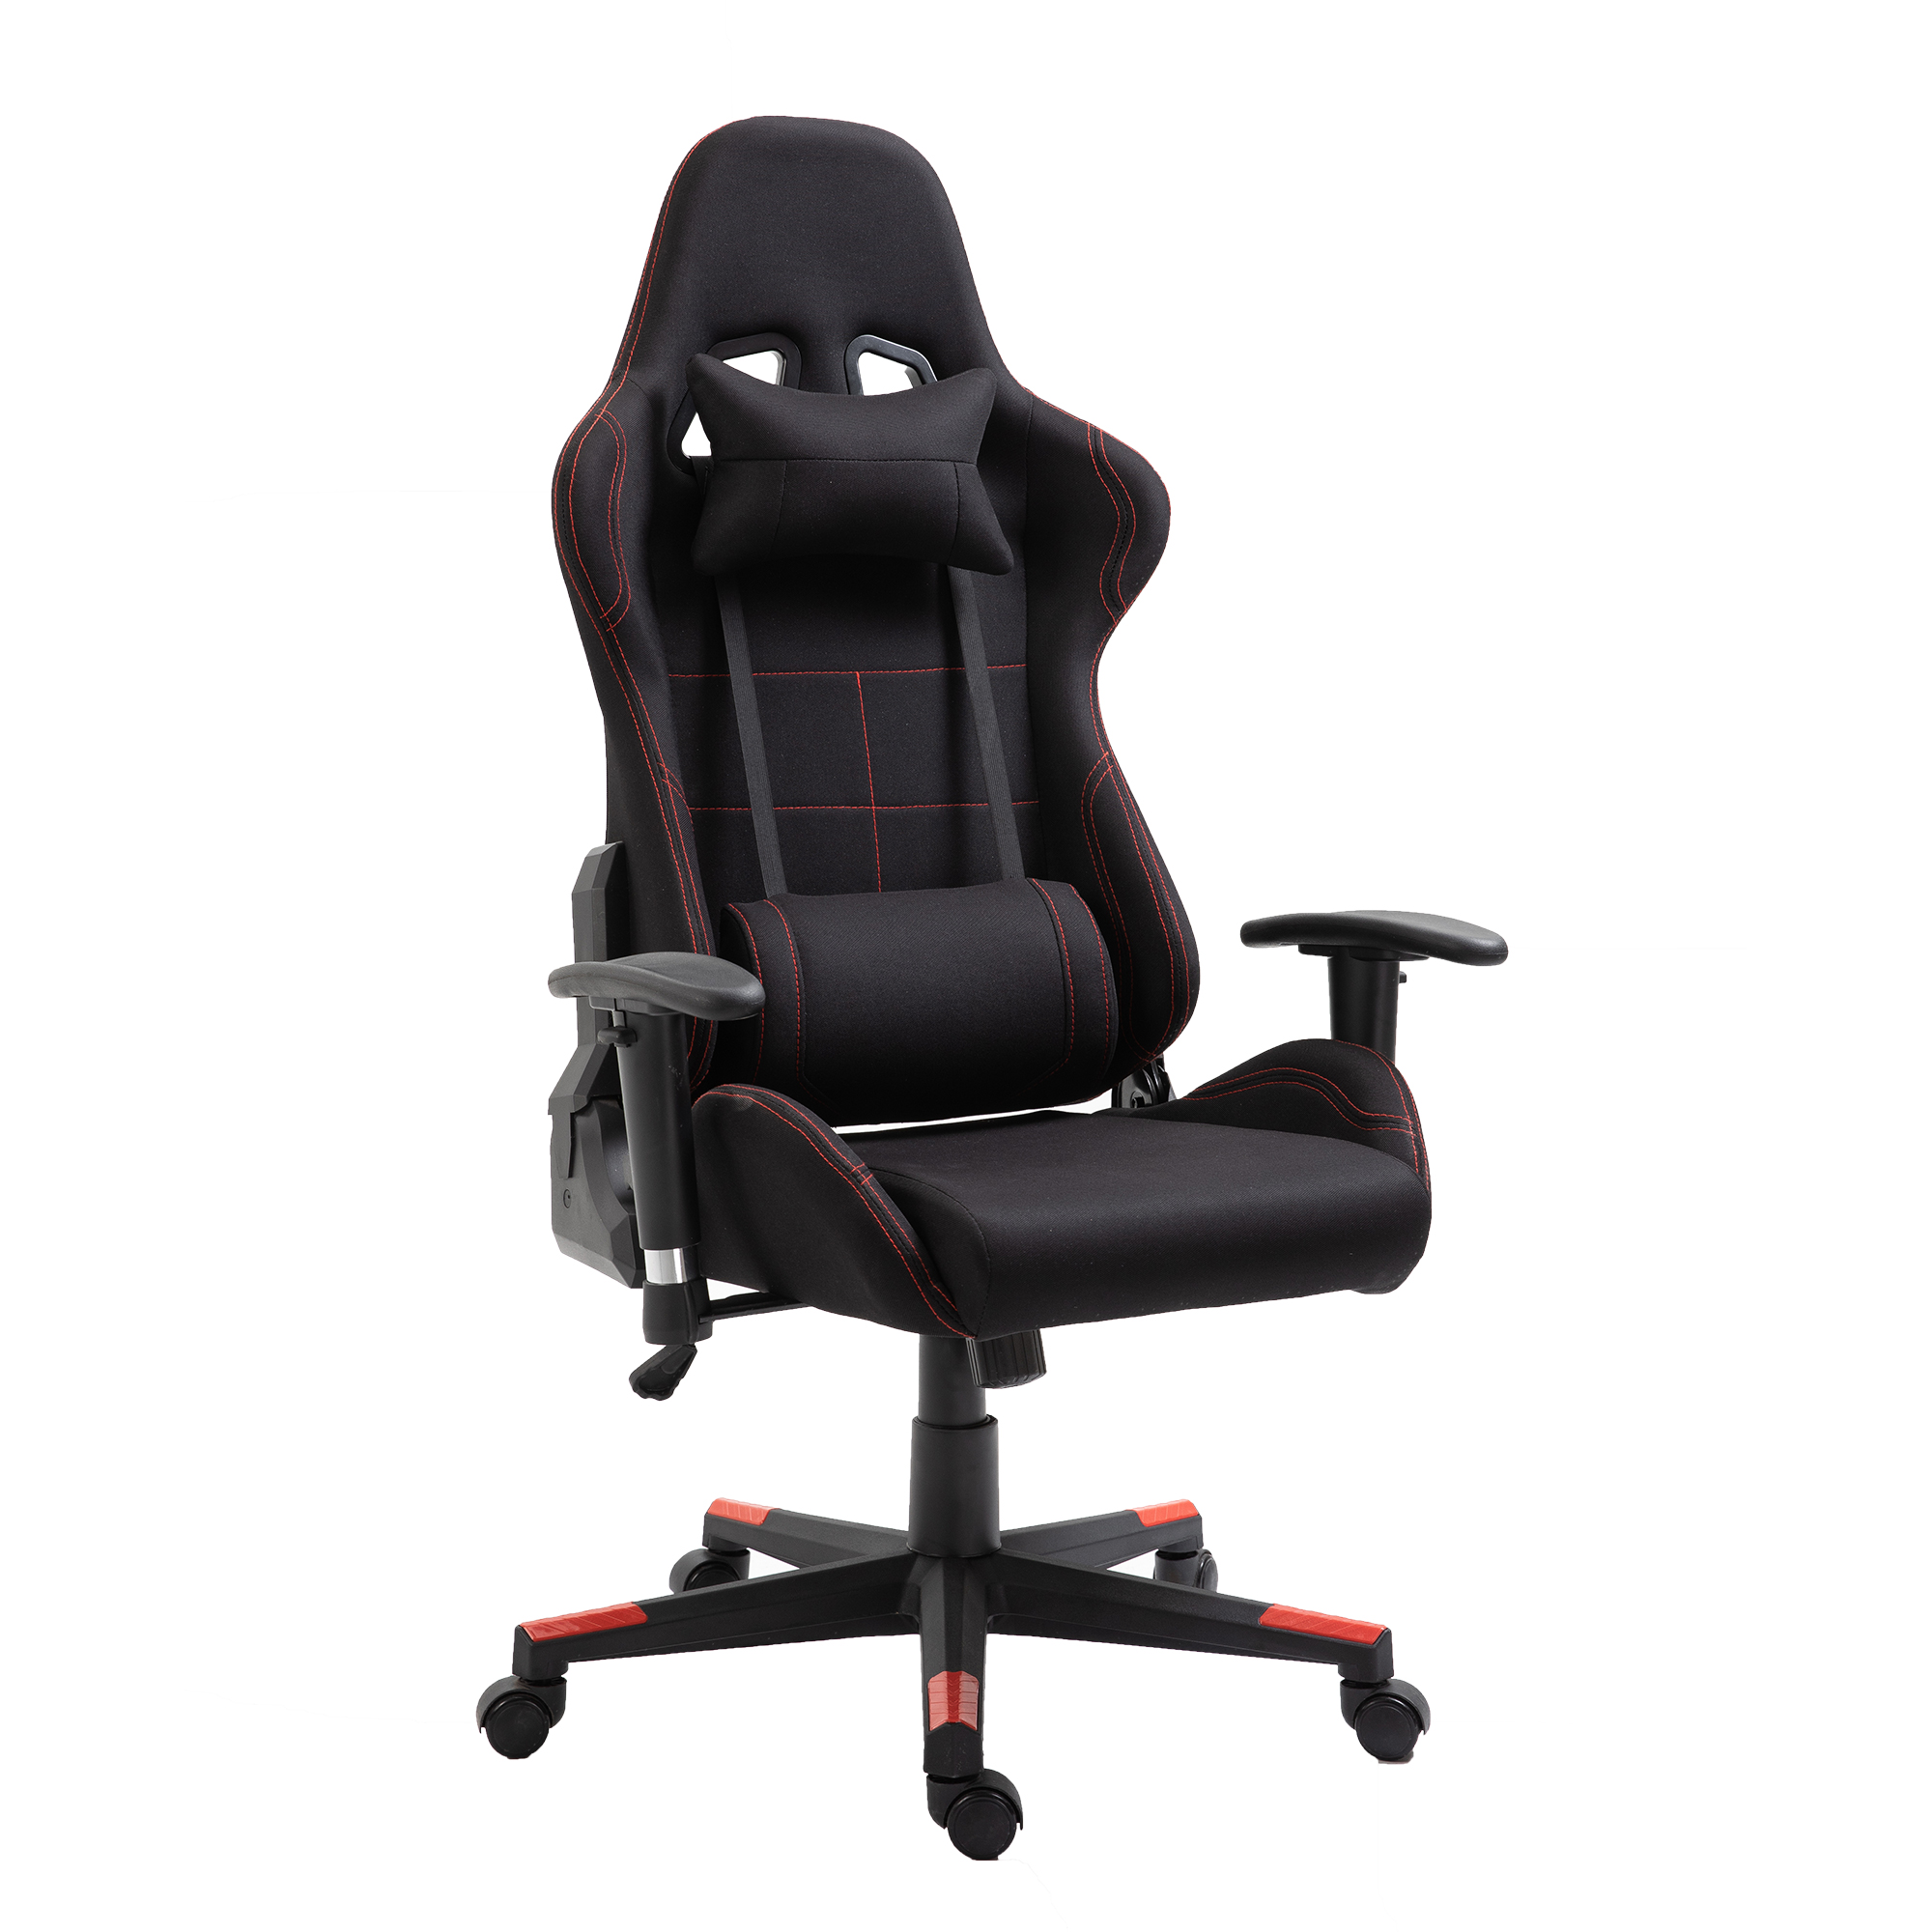 Сучасне офісне крісло для комп’ютерних ігор. Комфортне ергономічне шкіряне ігрове крісло для геймерів.